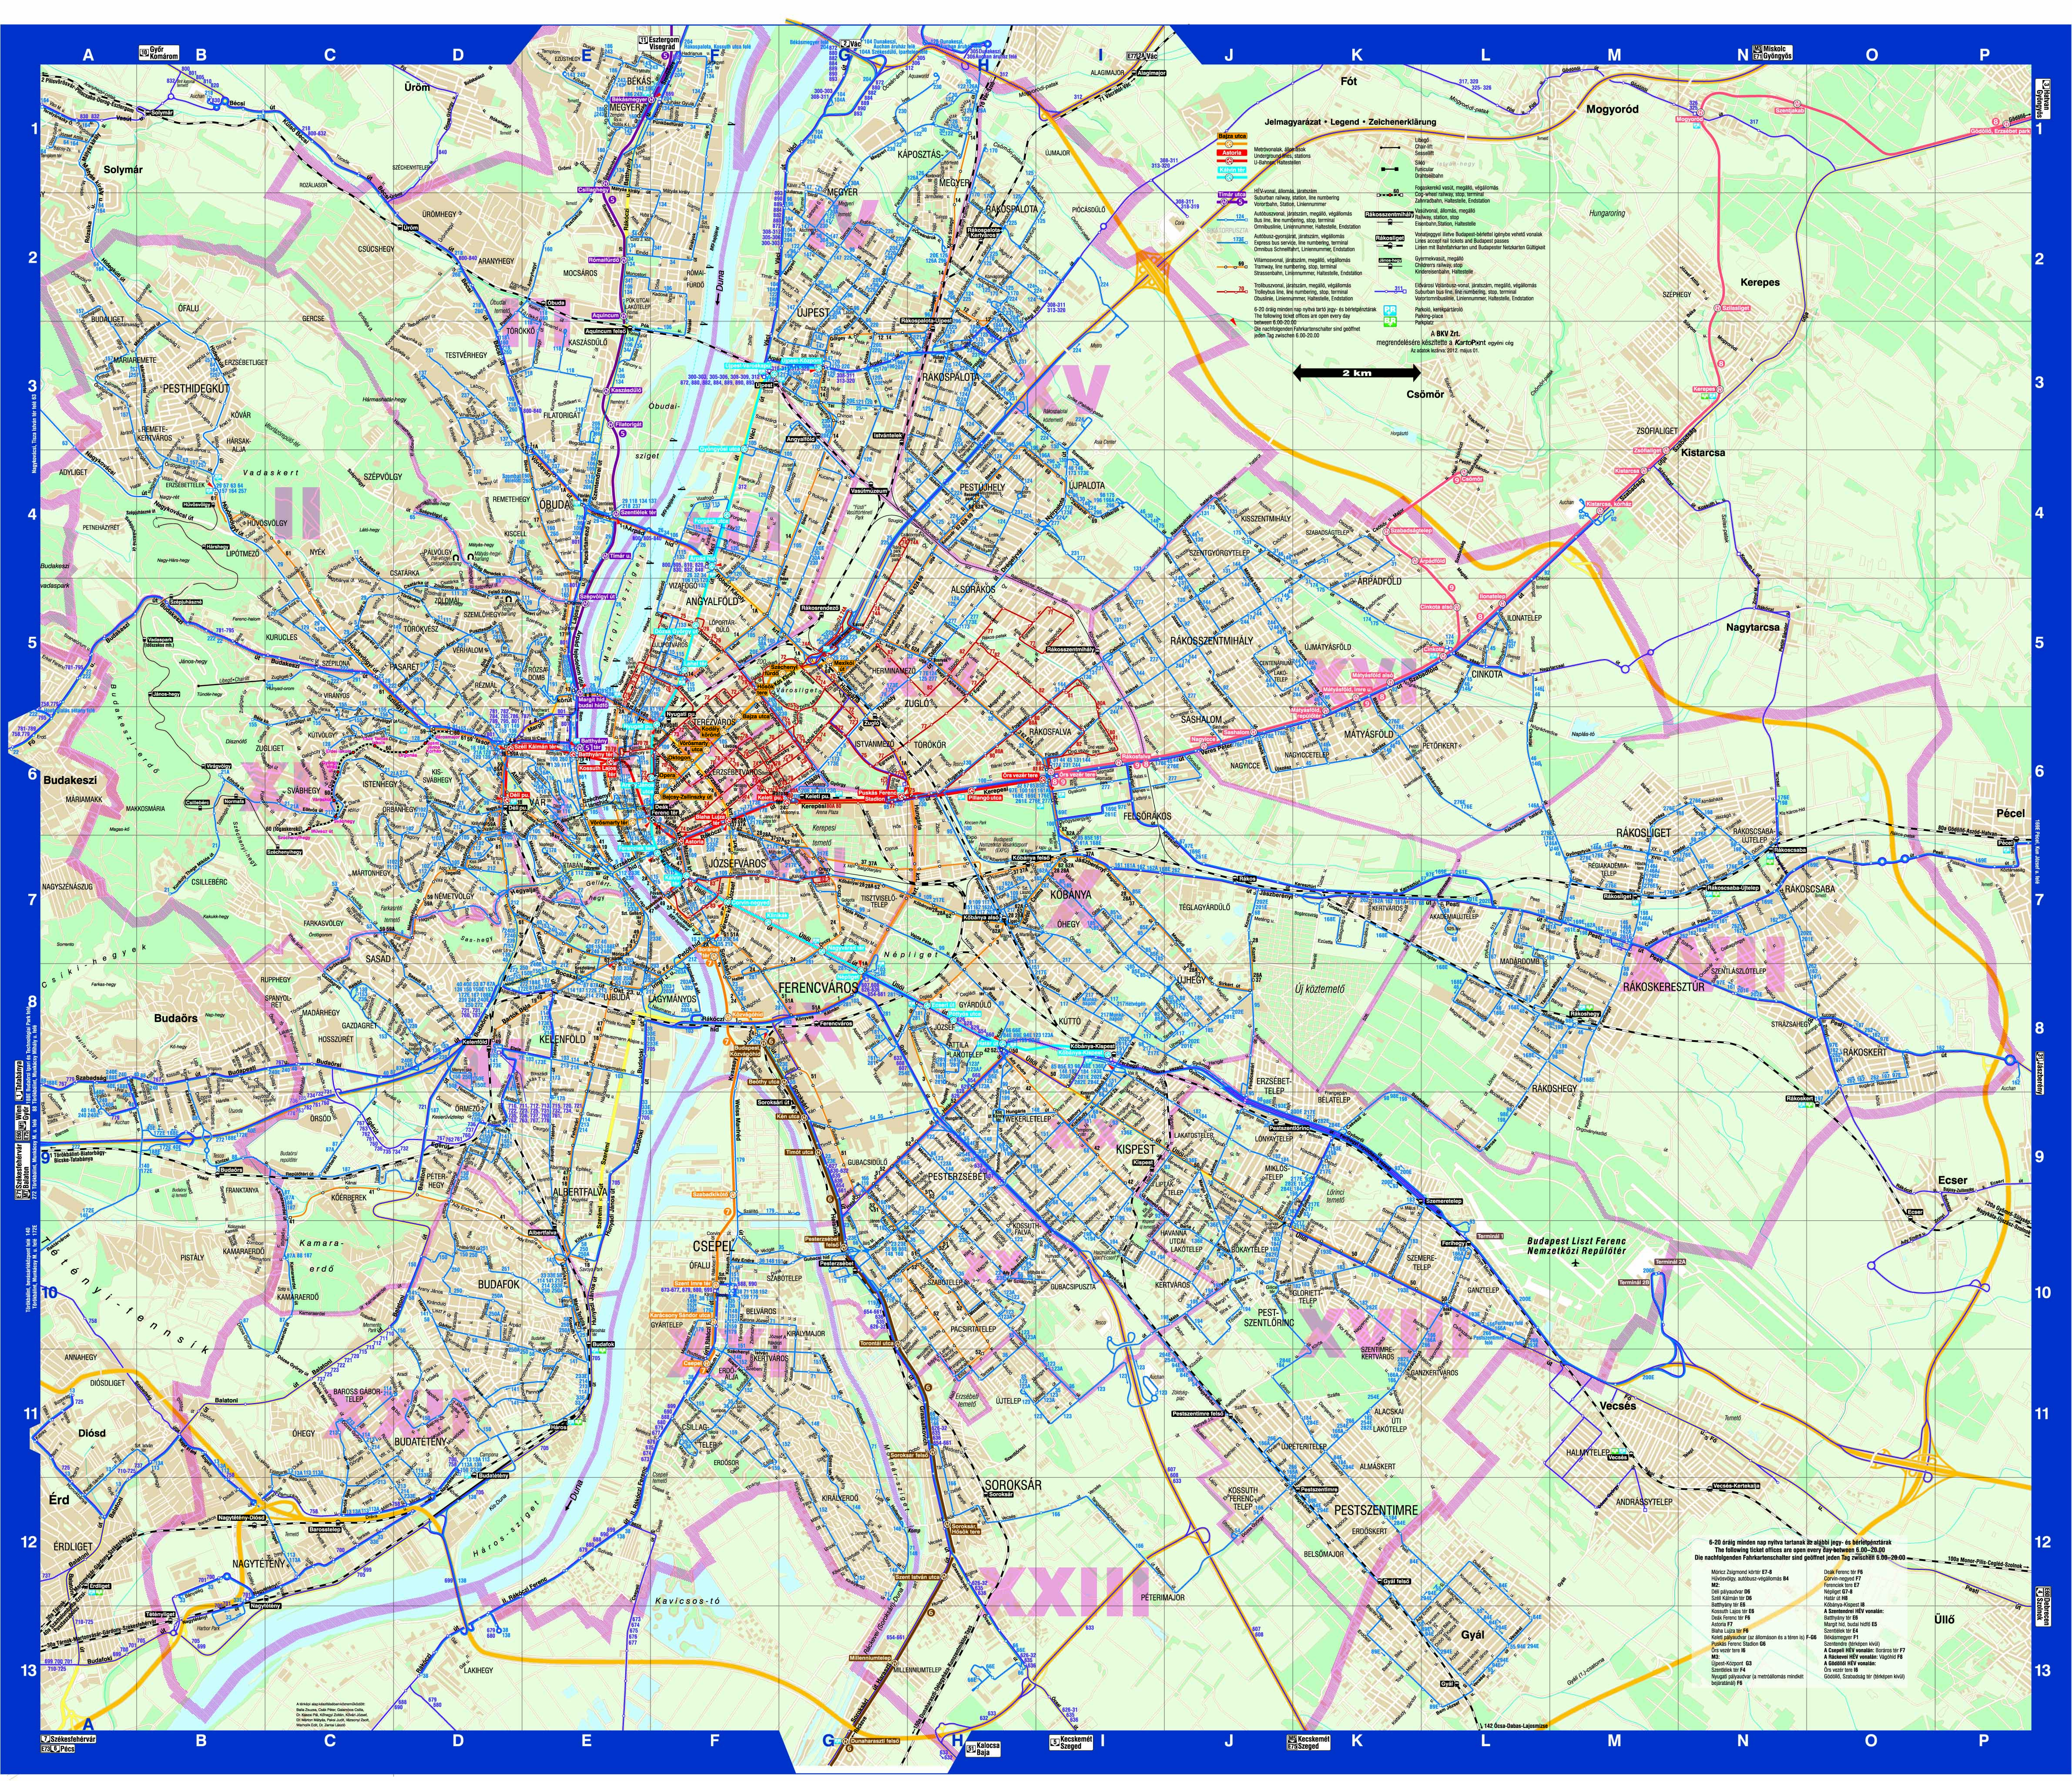 buszjáratok budapest térkép Budapest közösségi közlekekedésének utasterheltsége buszjáratok budapest térkép